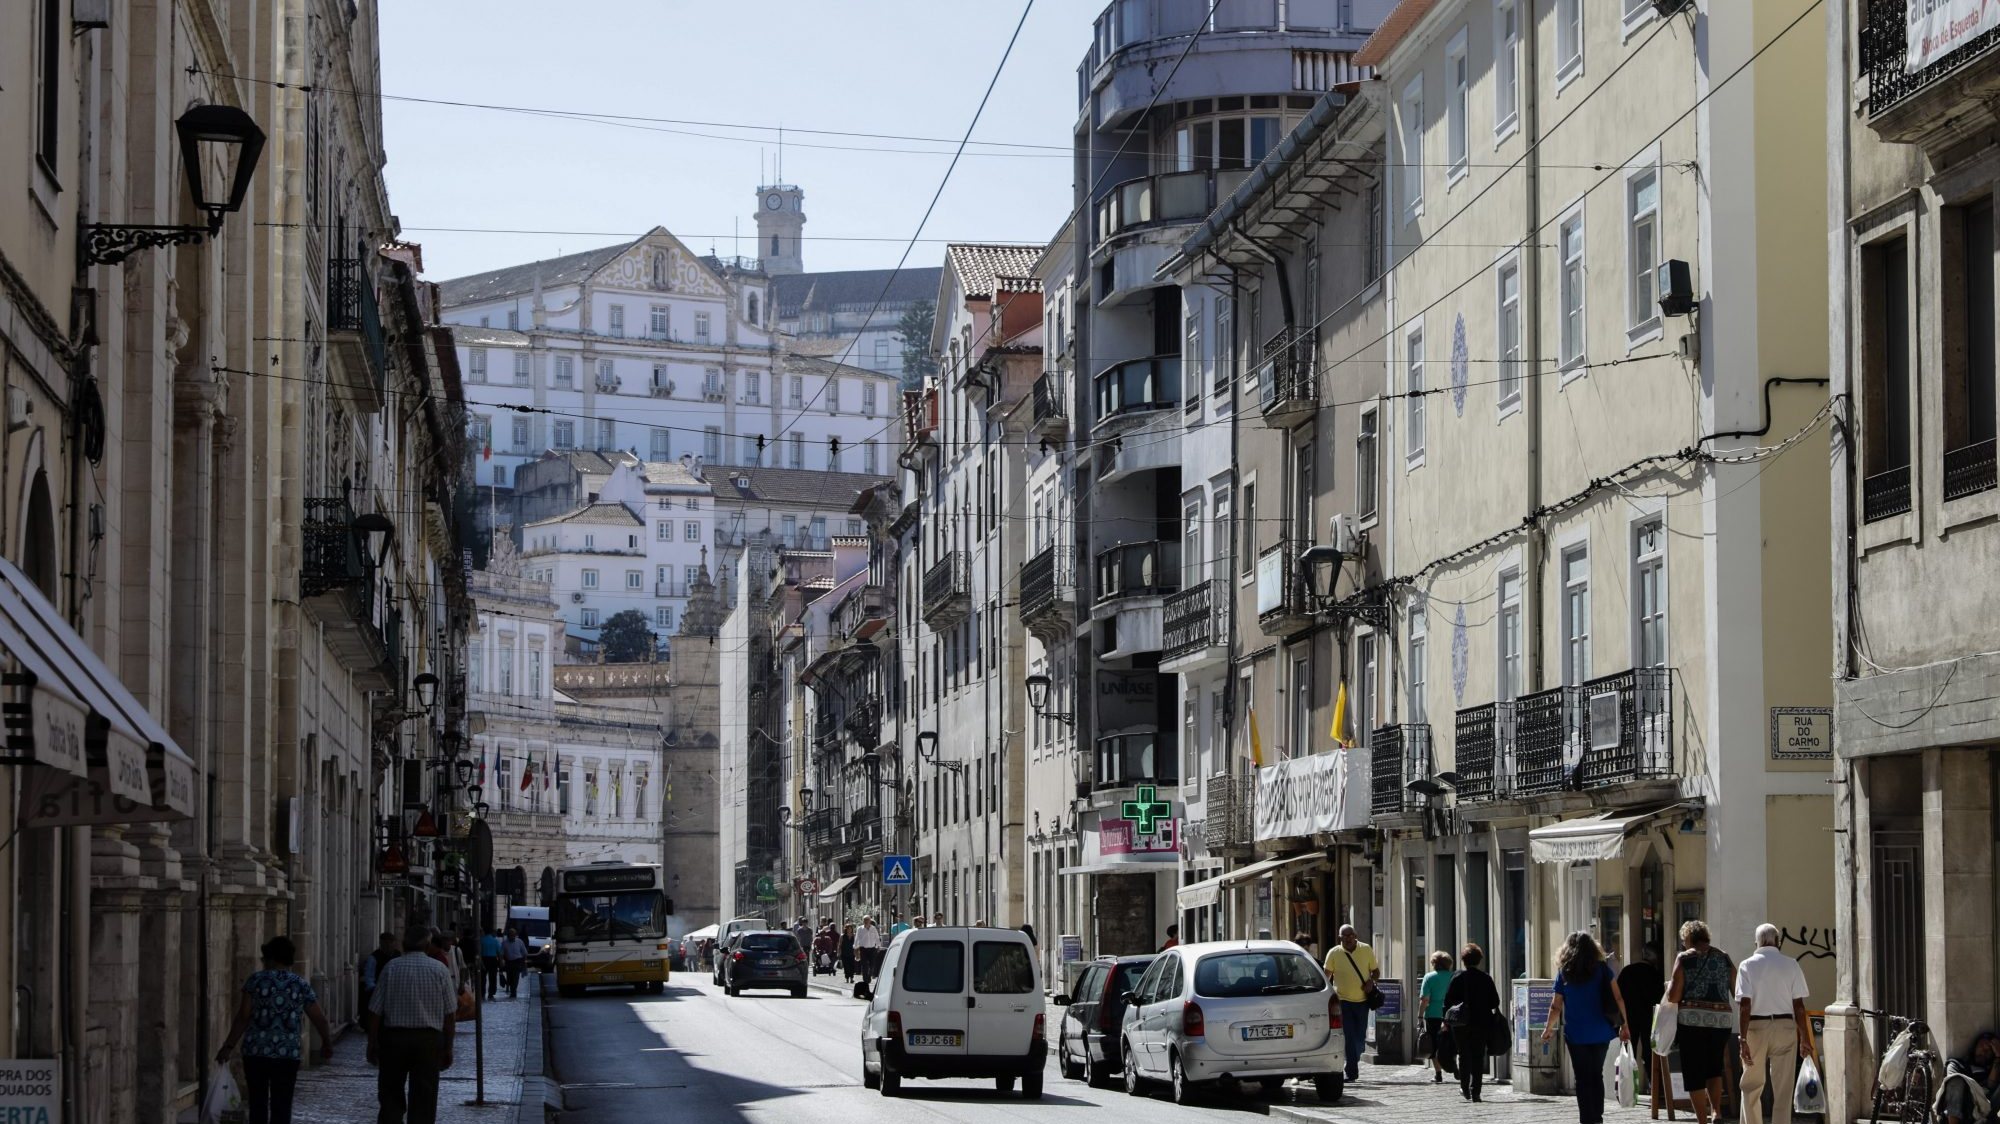 O município de Coimbra esclarece que a propaganda política ou eleitoral não está sujeita a licenciamento, autorização ou outro ato permissivo, mas apenas ao cumprimento da legislação aplicável